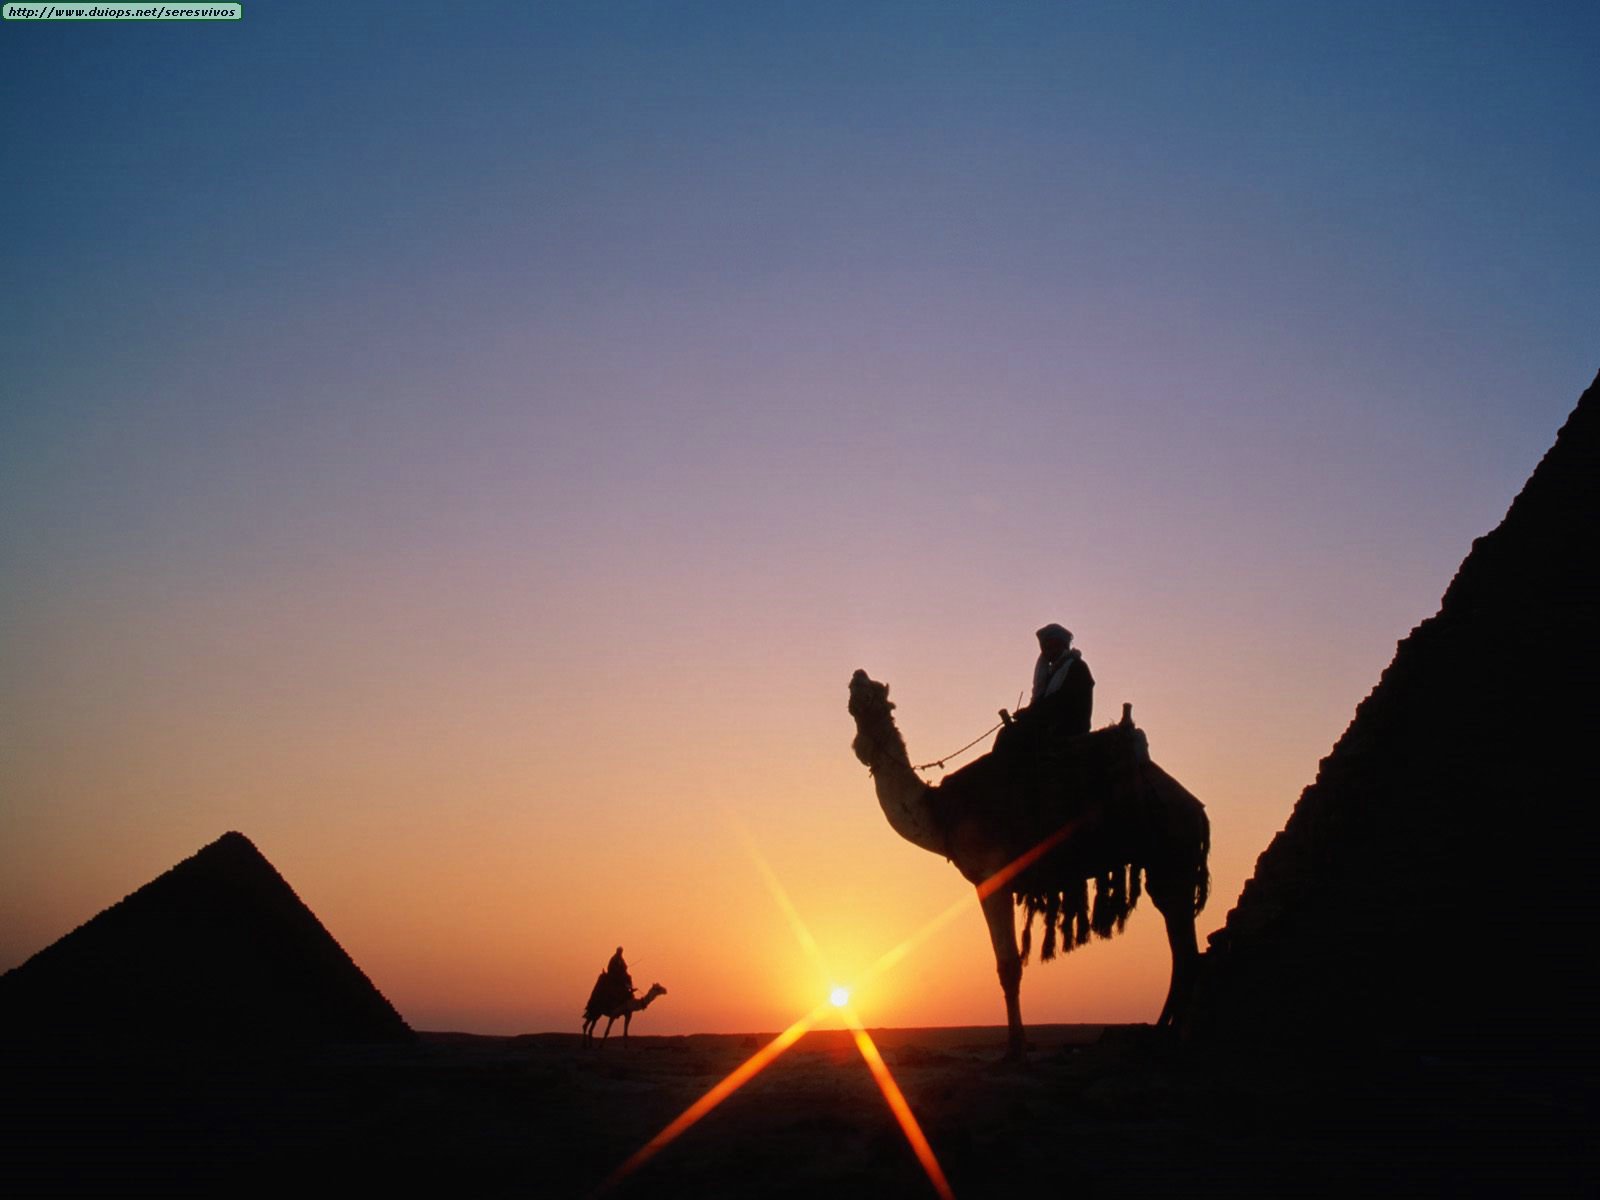 غروب الشمس الساحر  Pyramid%20Sunset,%20Giza,%20Egypt